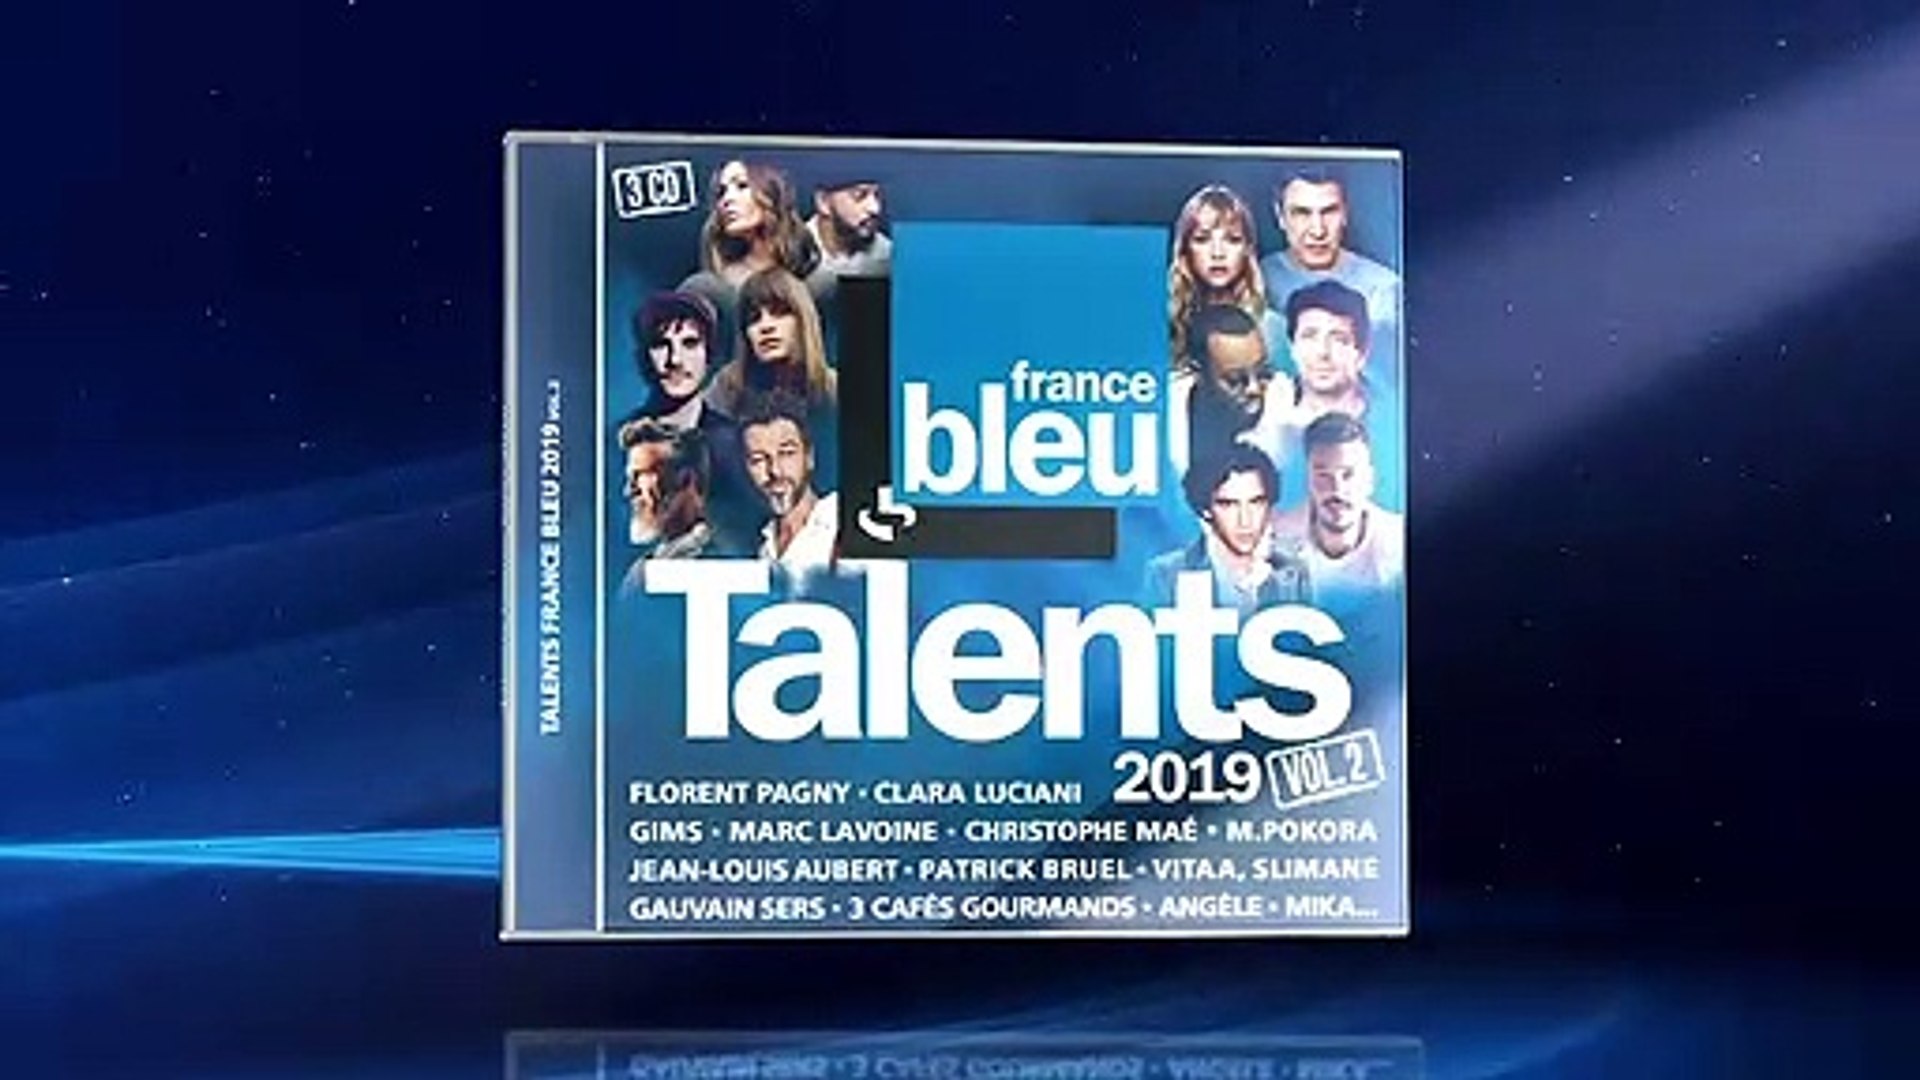 La compilation des Talents France Bleu 2019 - Volume 2 - Vidéo Dailymotion